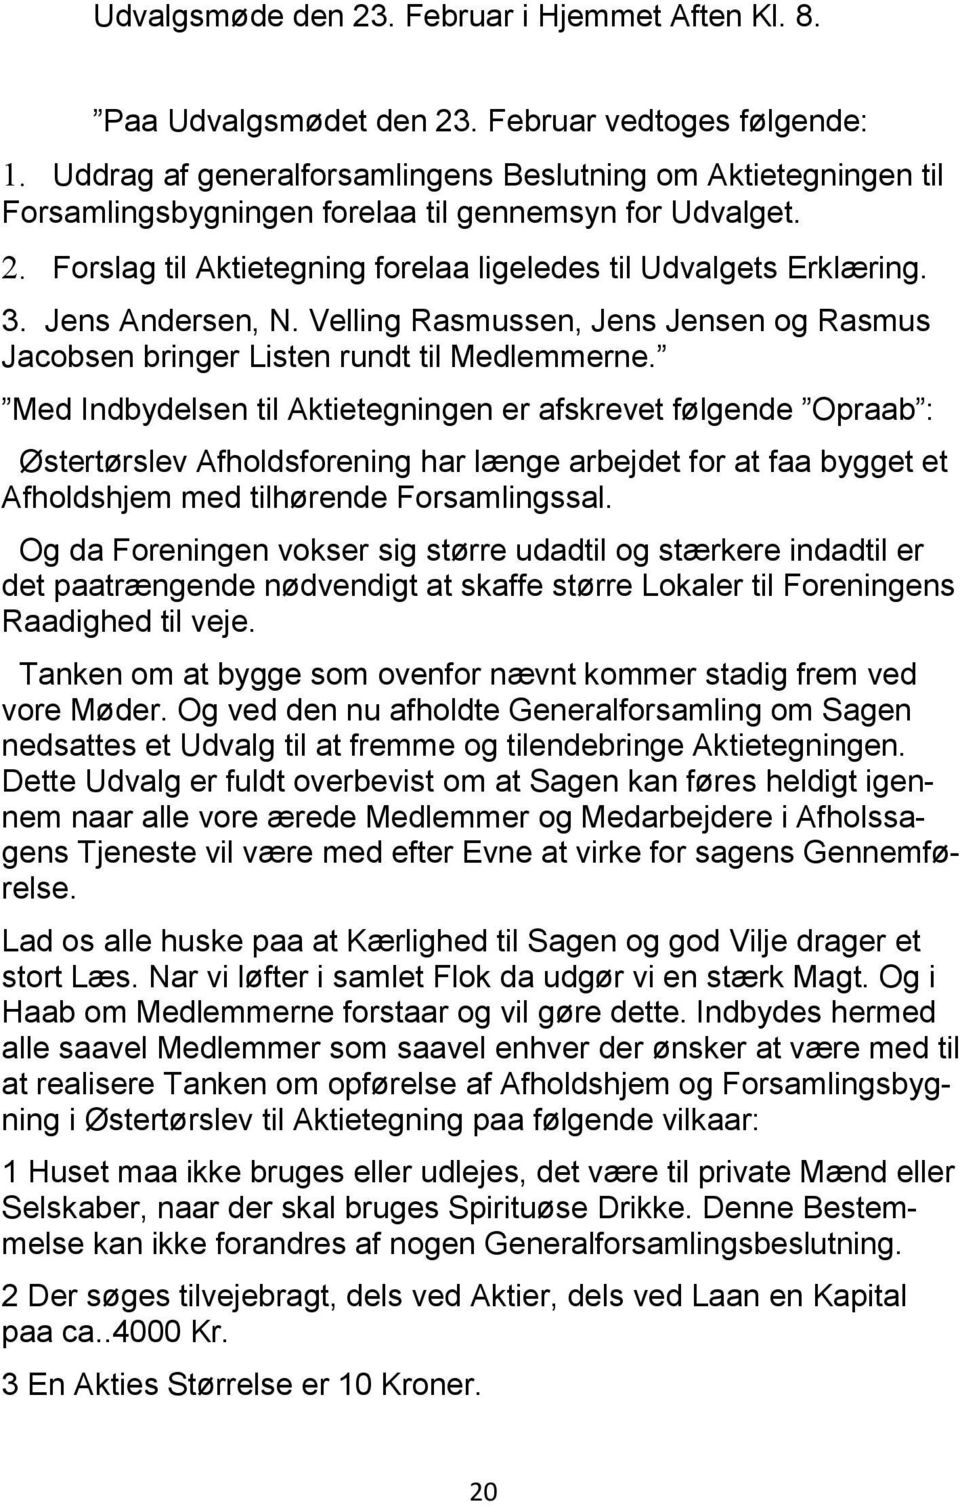 Jens Andersen, N. Velling Rasmussen, Jens Jensen og Rasmus Jacobsen bringer Listen rundt til Medlemmerne.